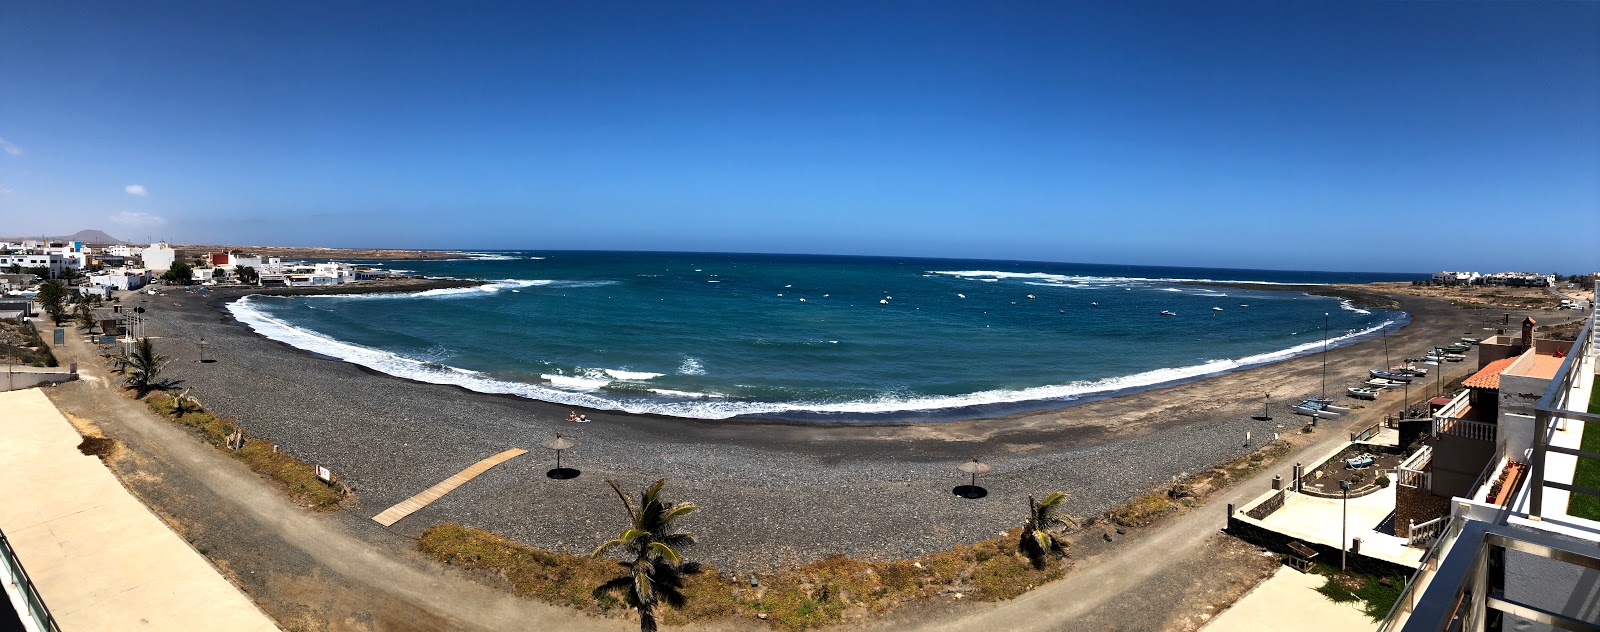 Foto de Playa Las Lajas - lugar popular entre os apreciadores de relaxamento